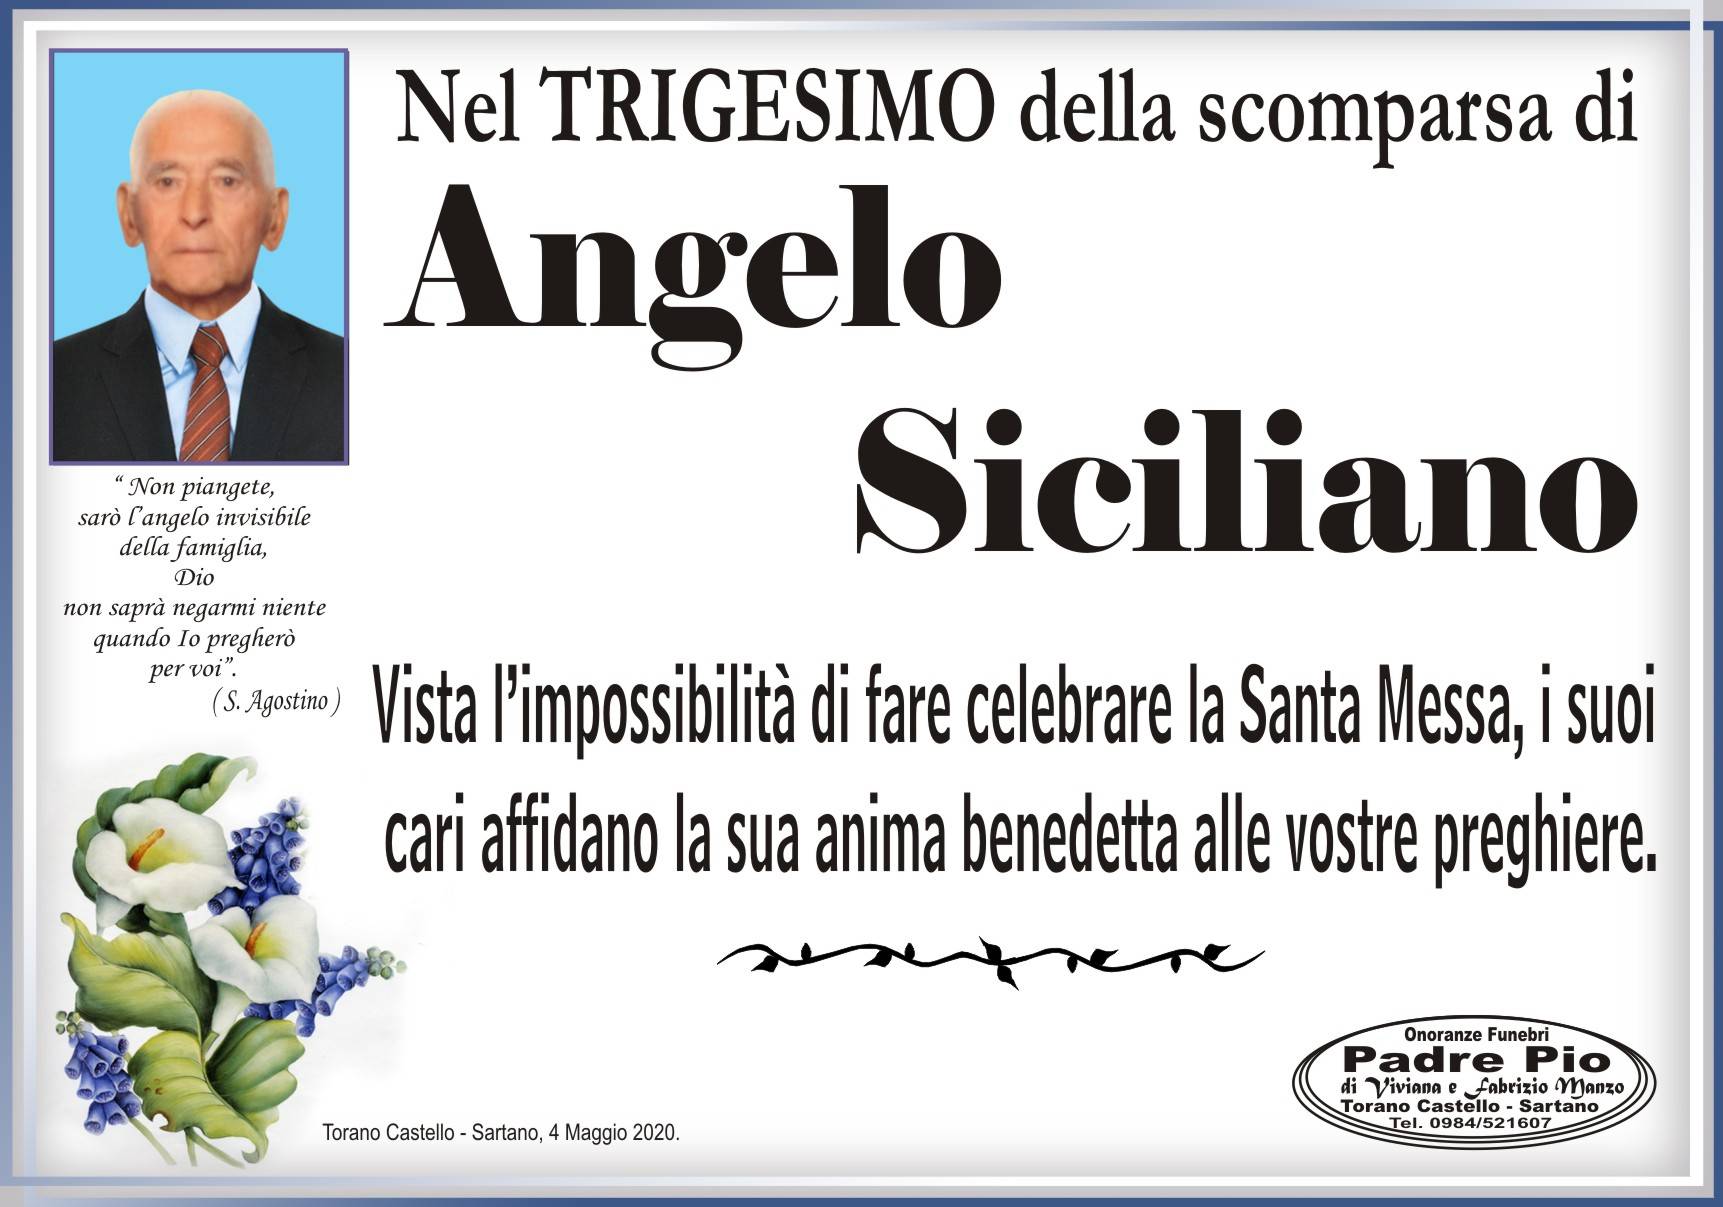 Angelo Siciliano